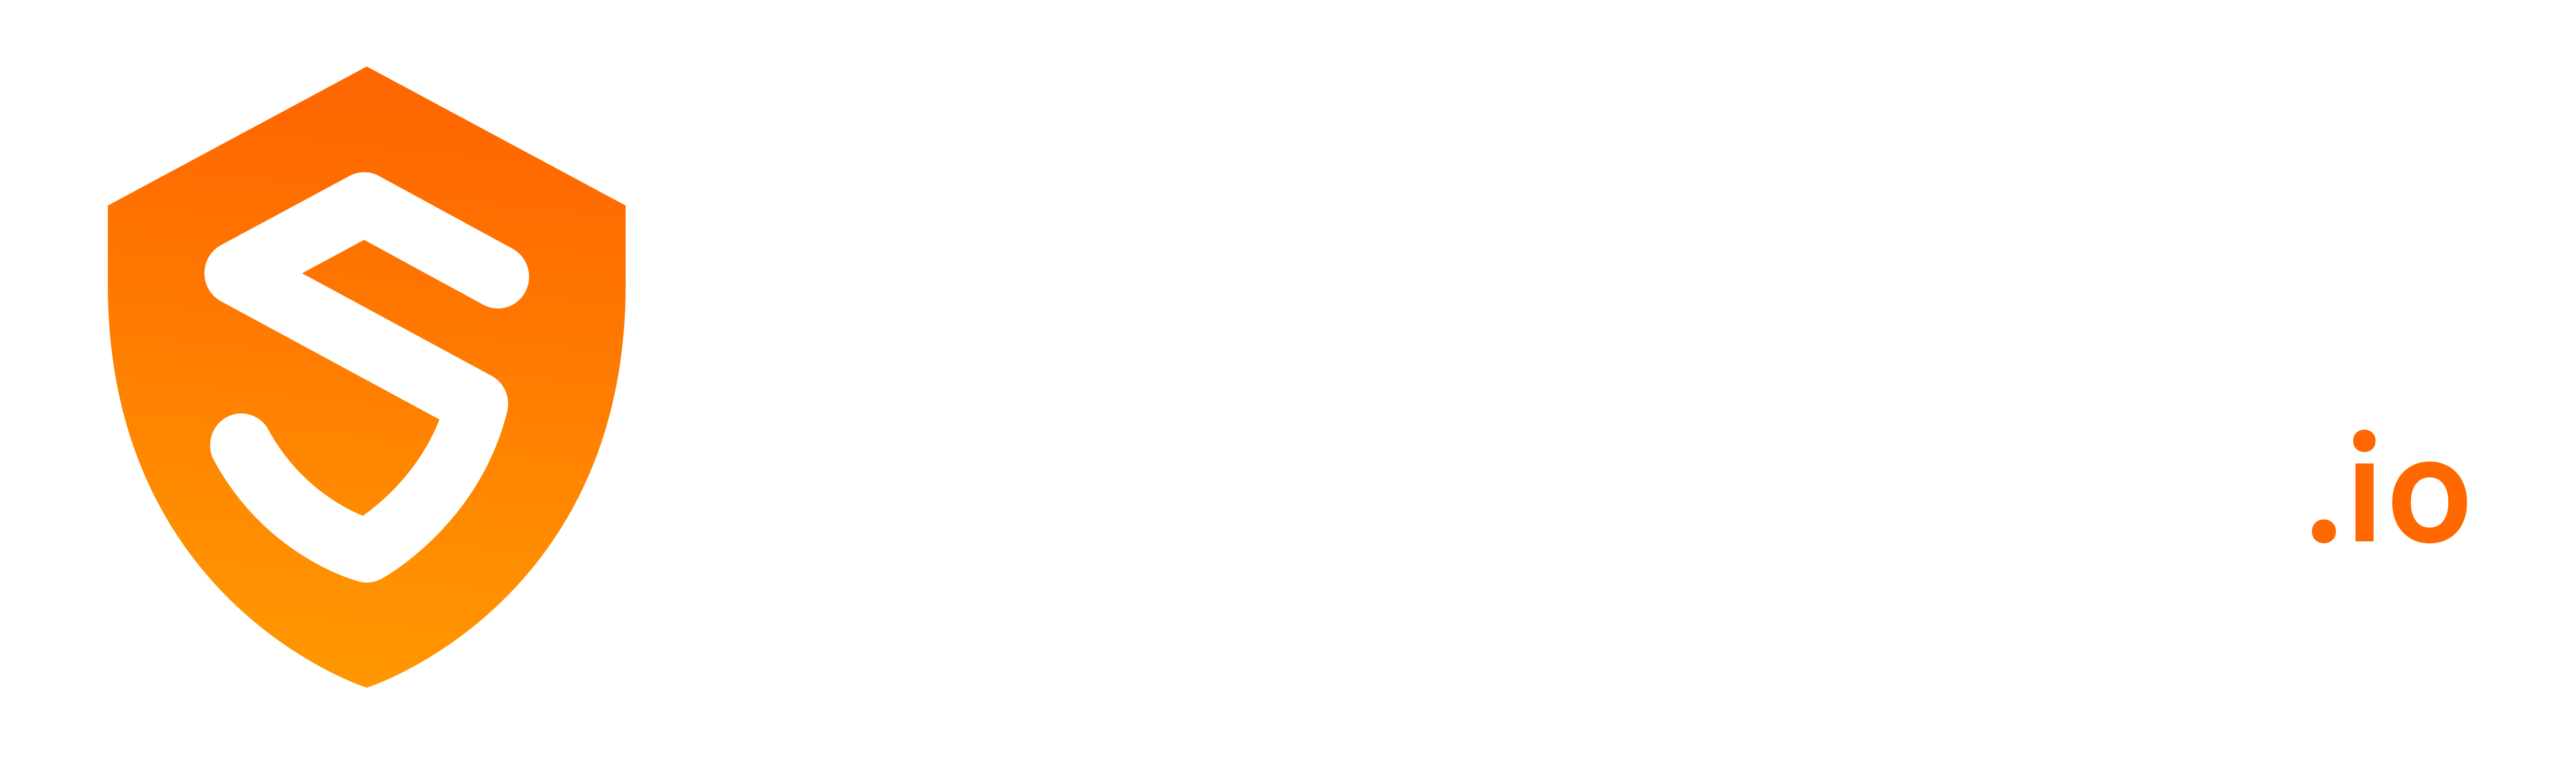 Shieldfy